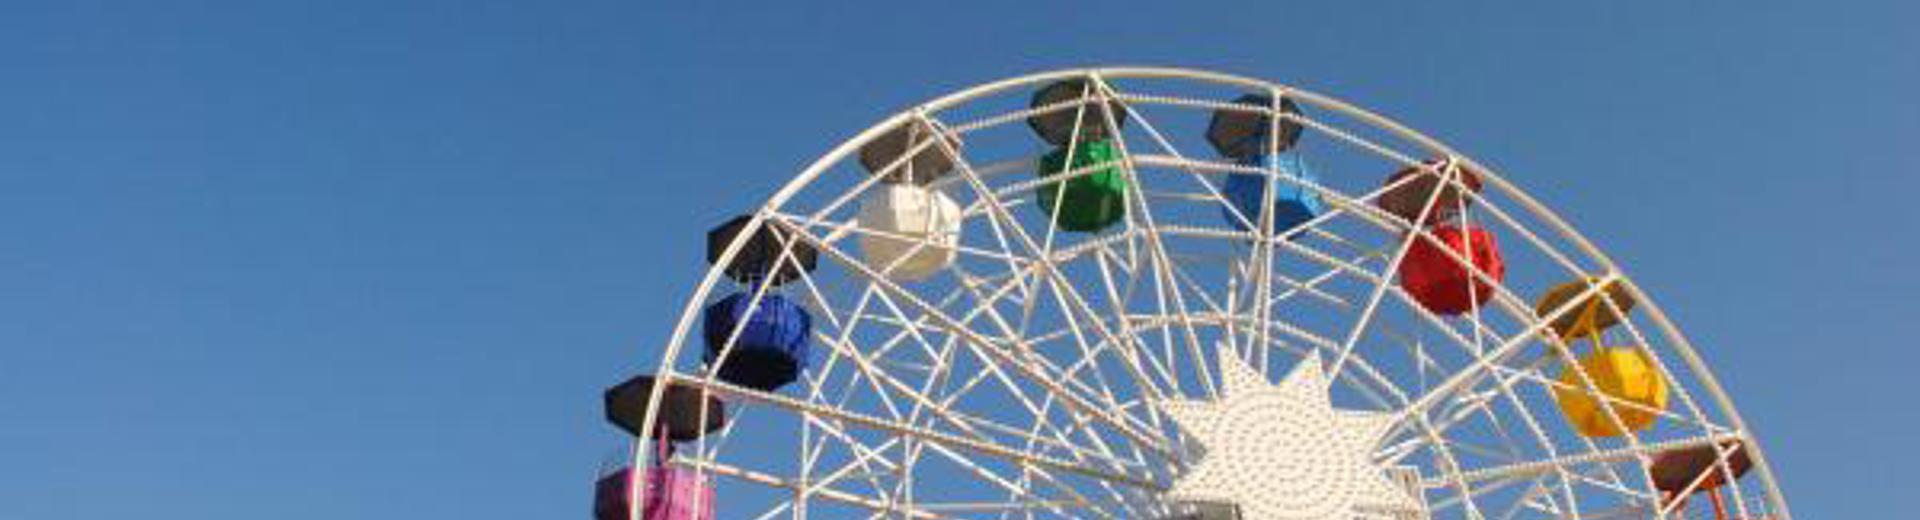 Ferris Wheel. Photo by Andrea Enríquez Cousiño on Unsplash